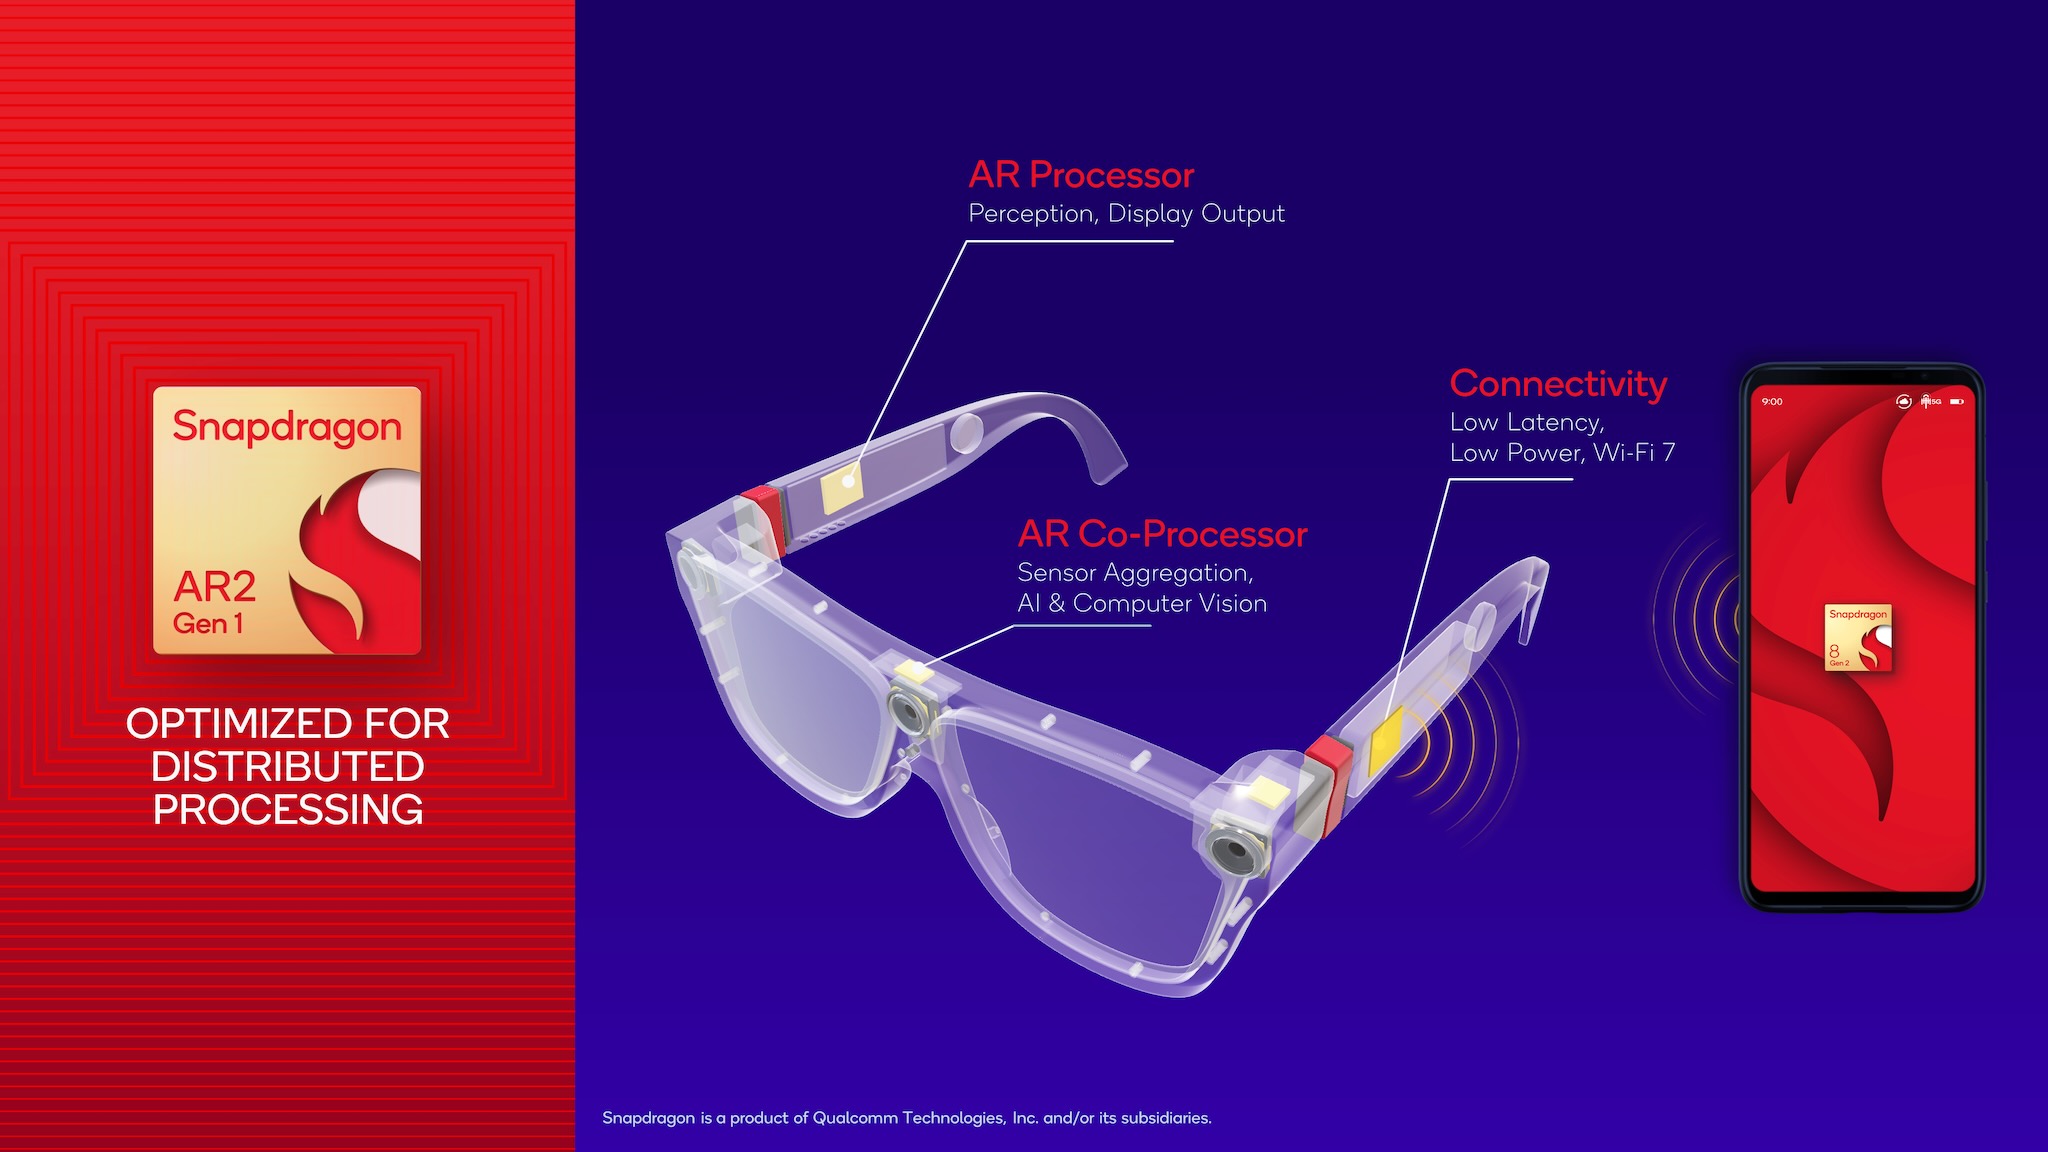 Página de prensa de Snapdragon AR2 que muestra el procesador AR, el coprocesador y el satélite de conectividad para las gafas AR.